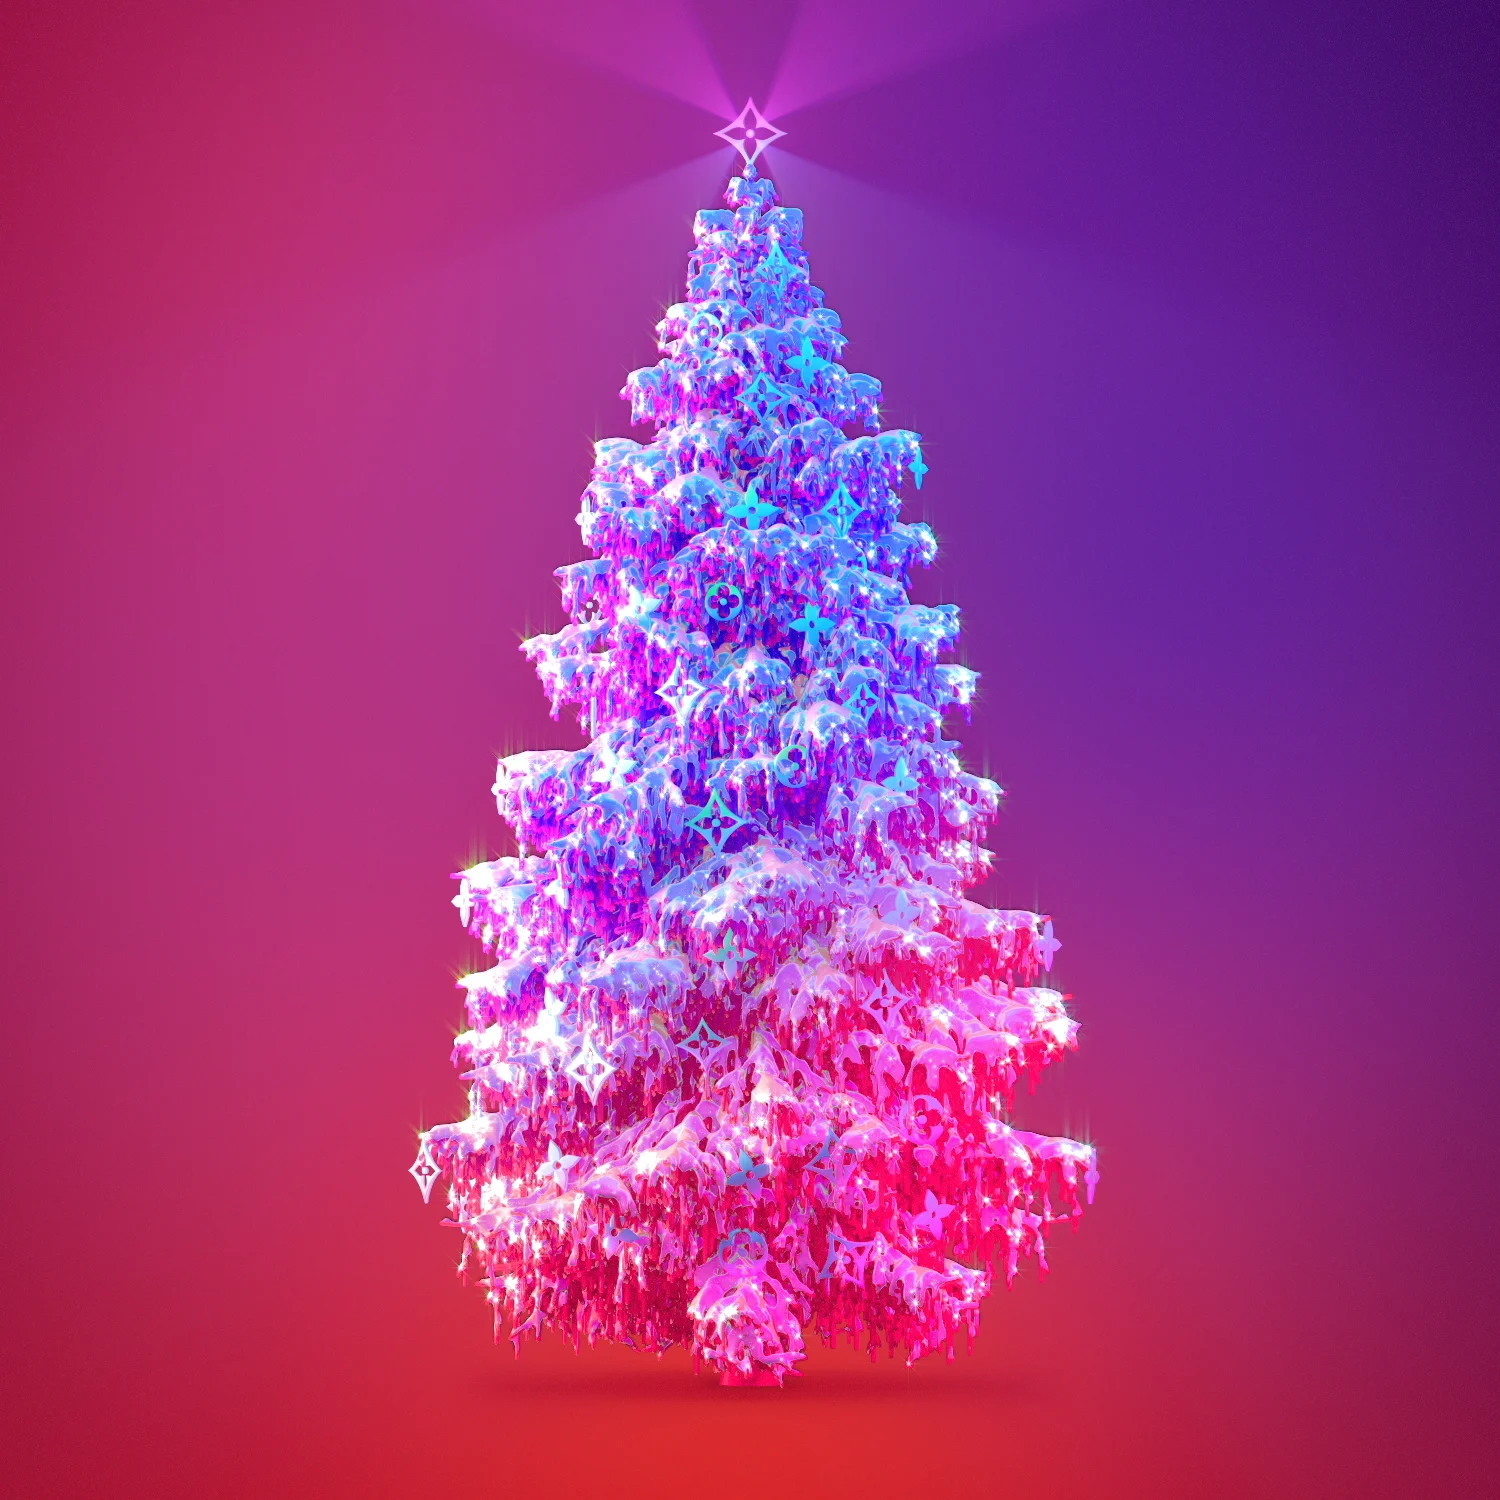 Louis Vuitton Christmas Tree #louisvuitton #louisvuittonlover